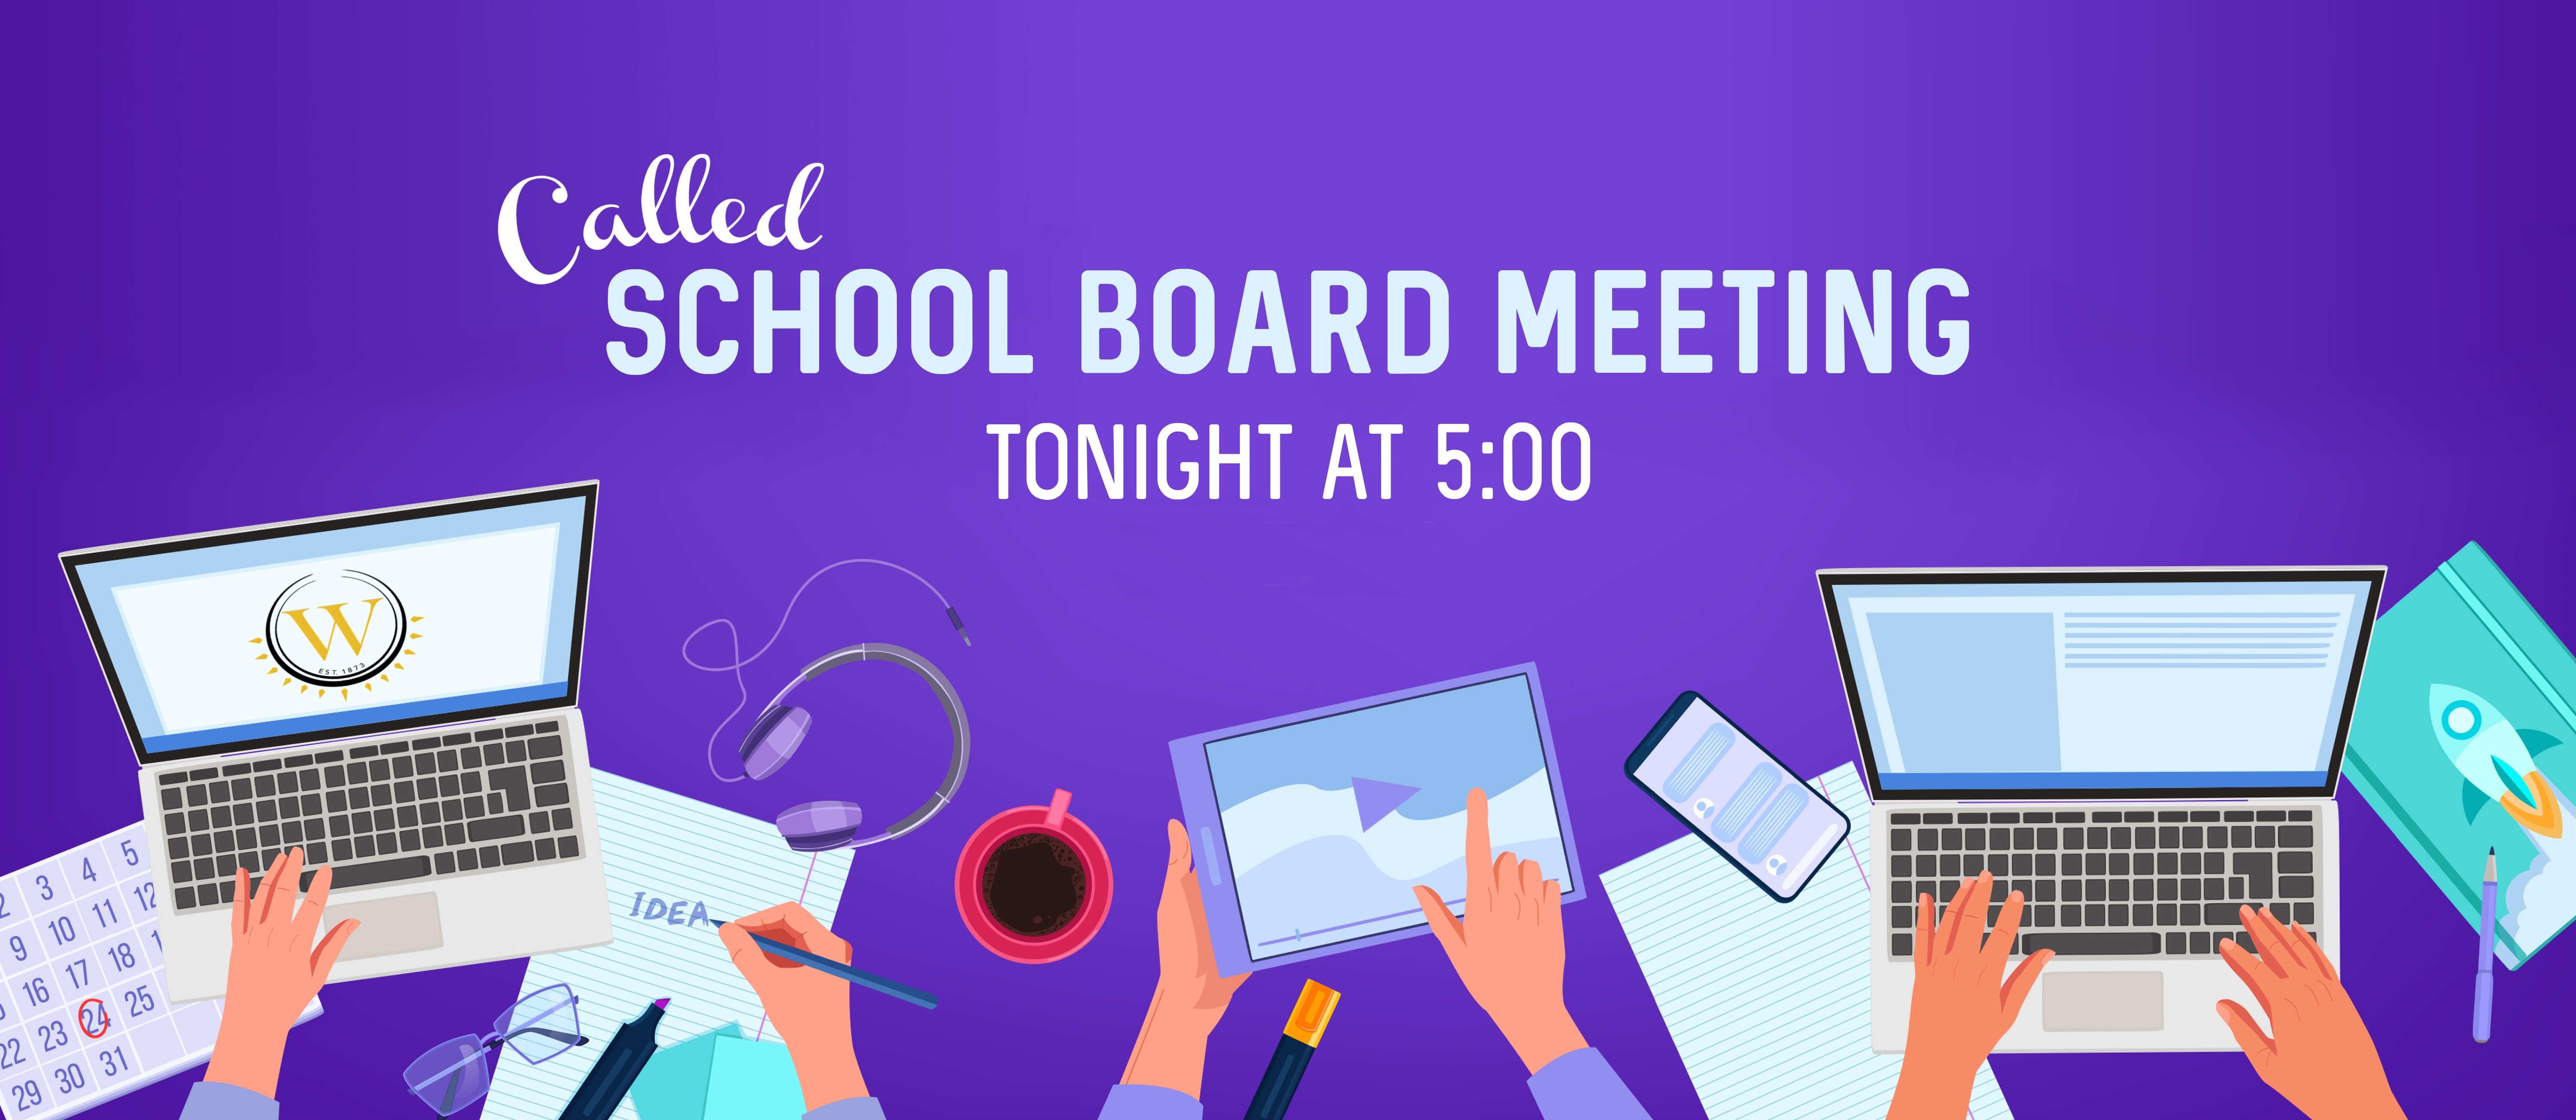 called school board meeting